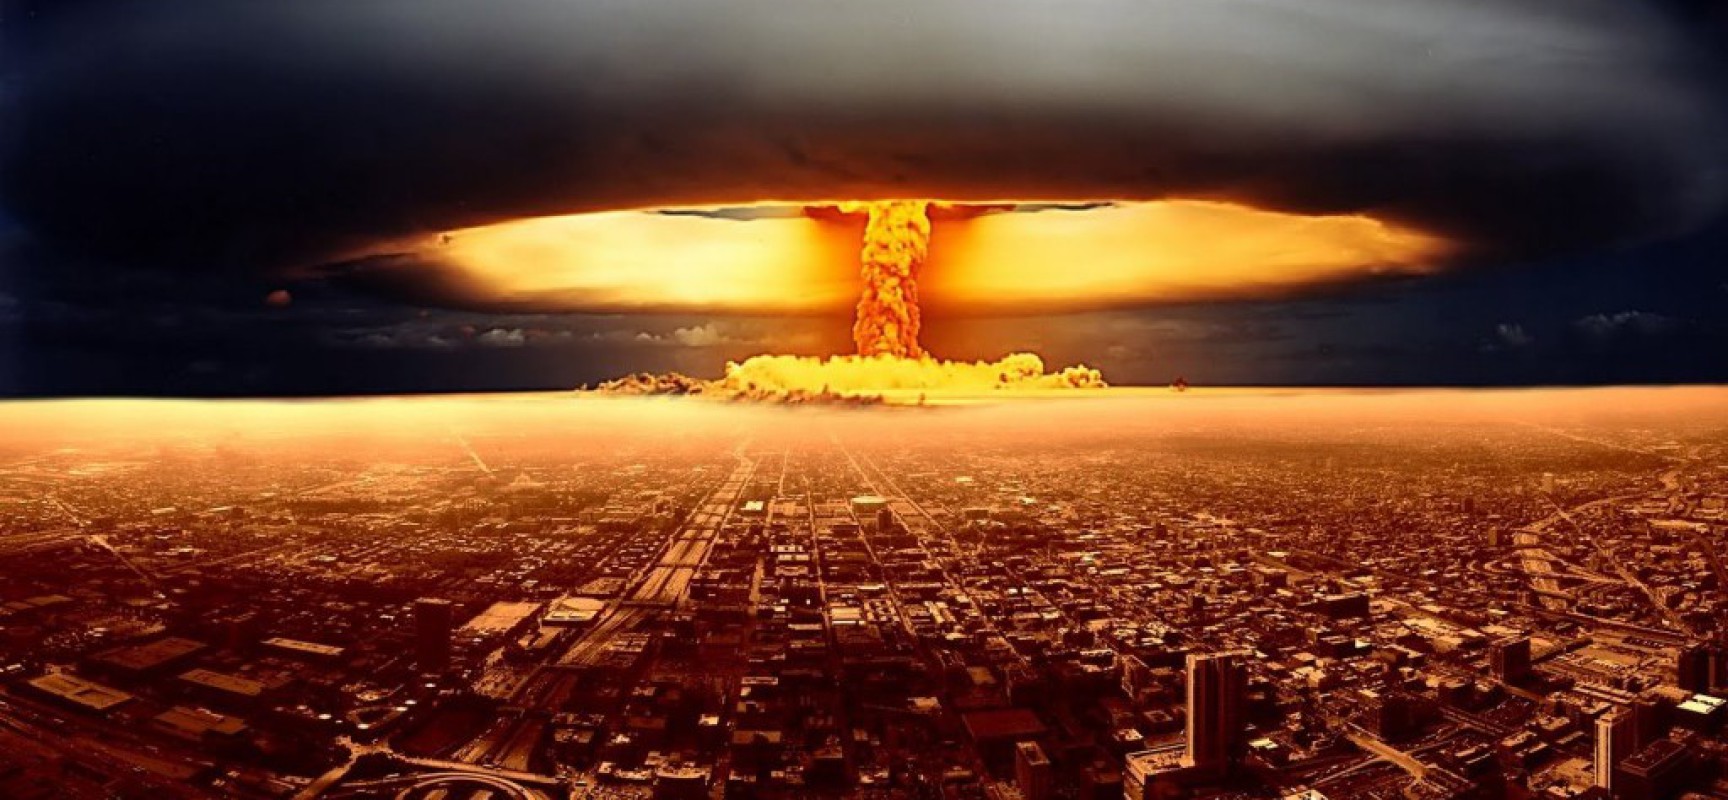 Le gouvernement de Zelenski promeut le fait que les gens doivent “se préparer” à une guerre nucléaire